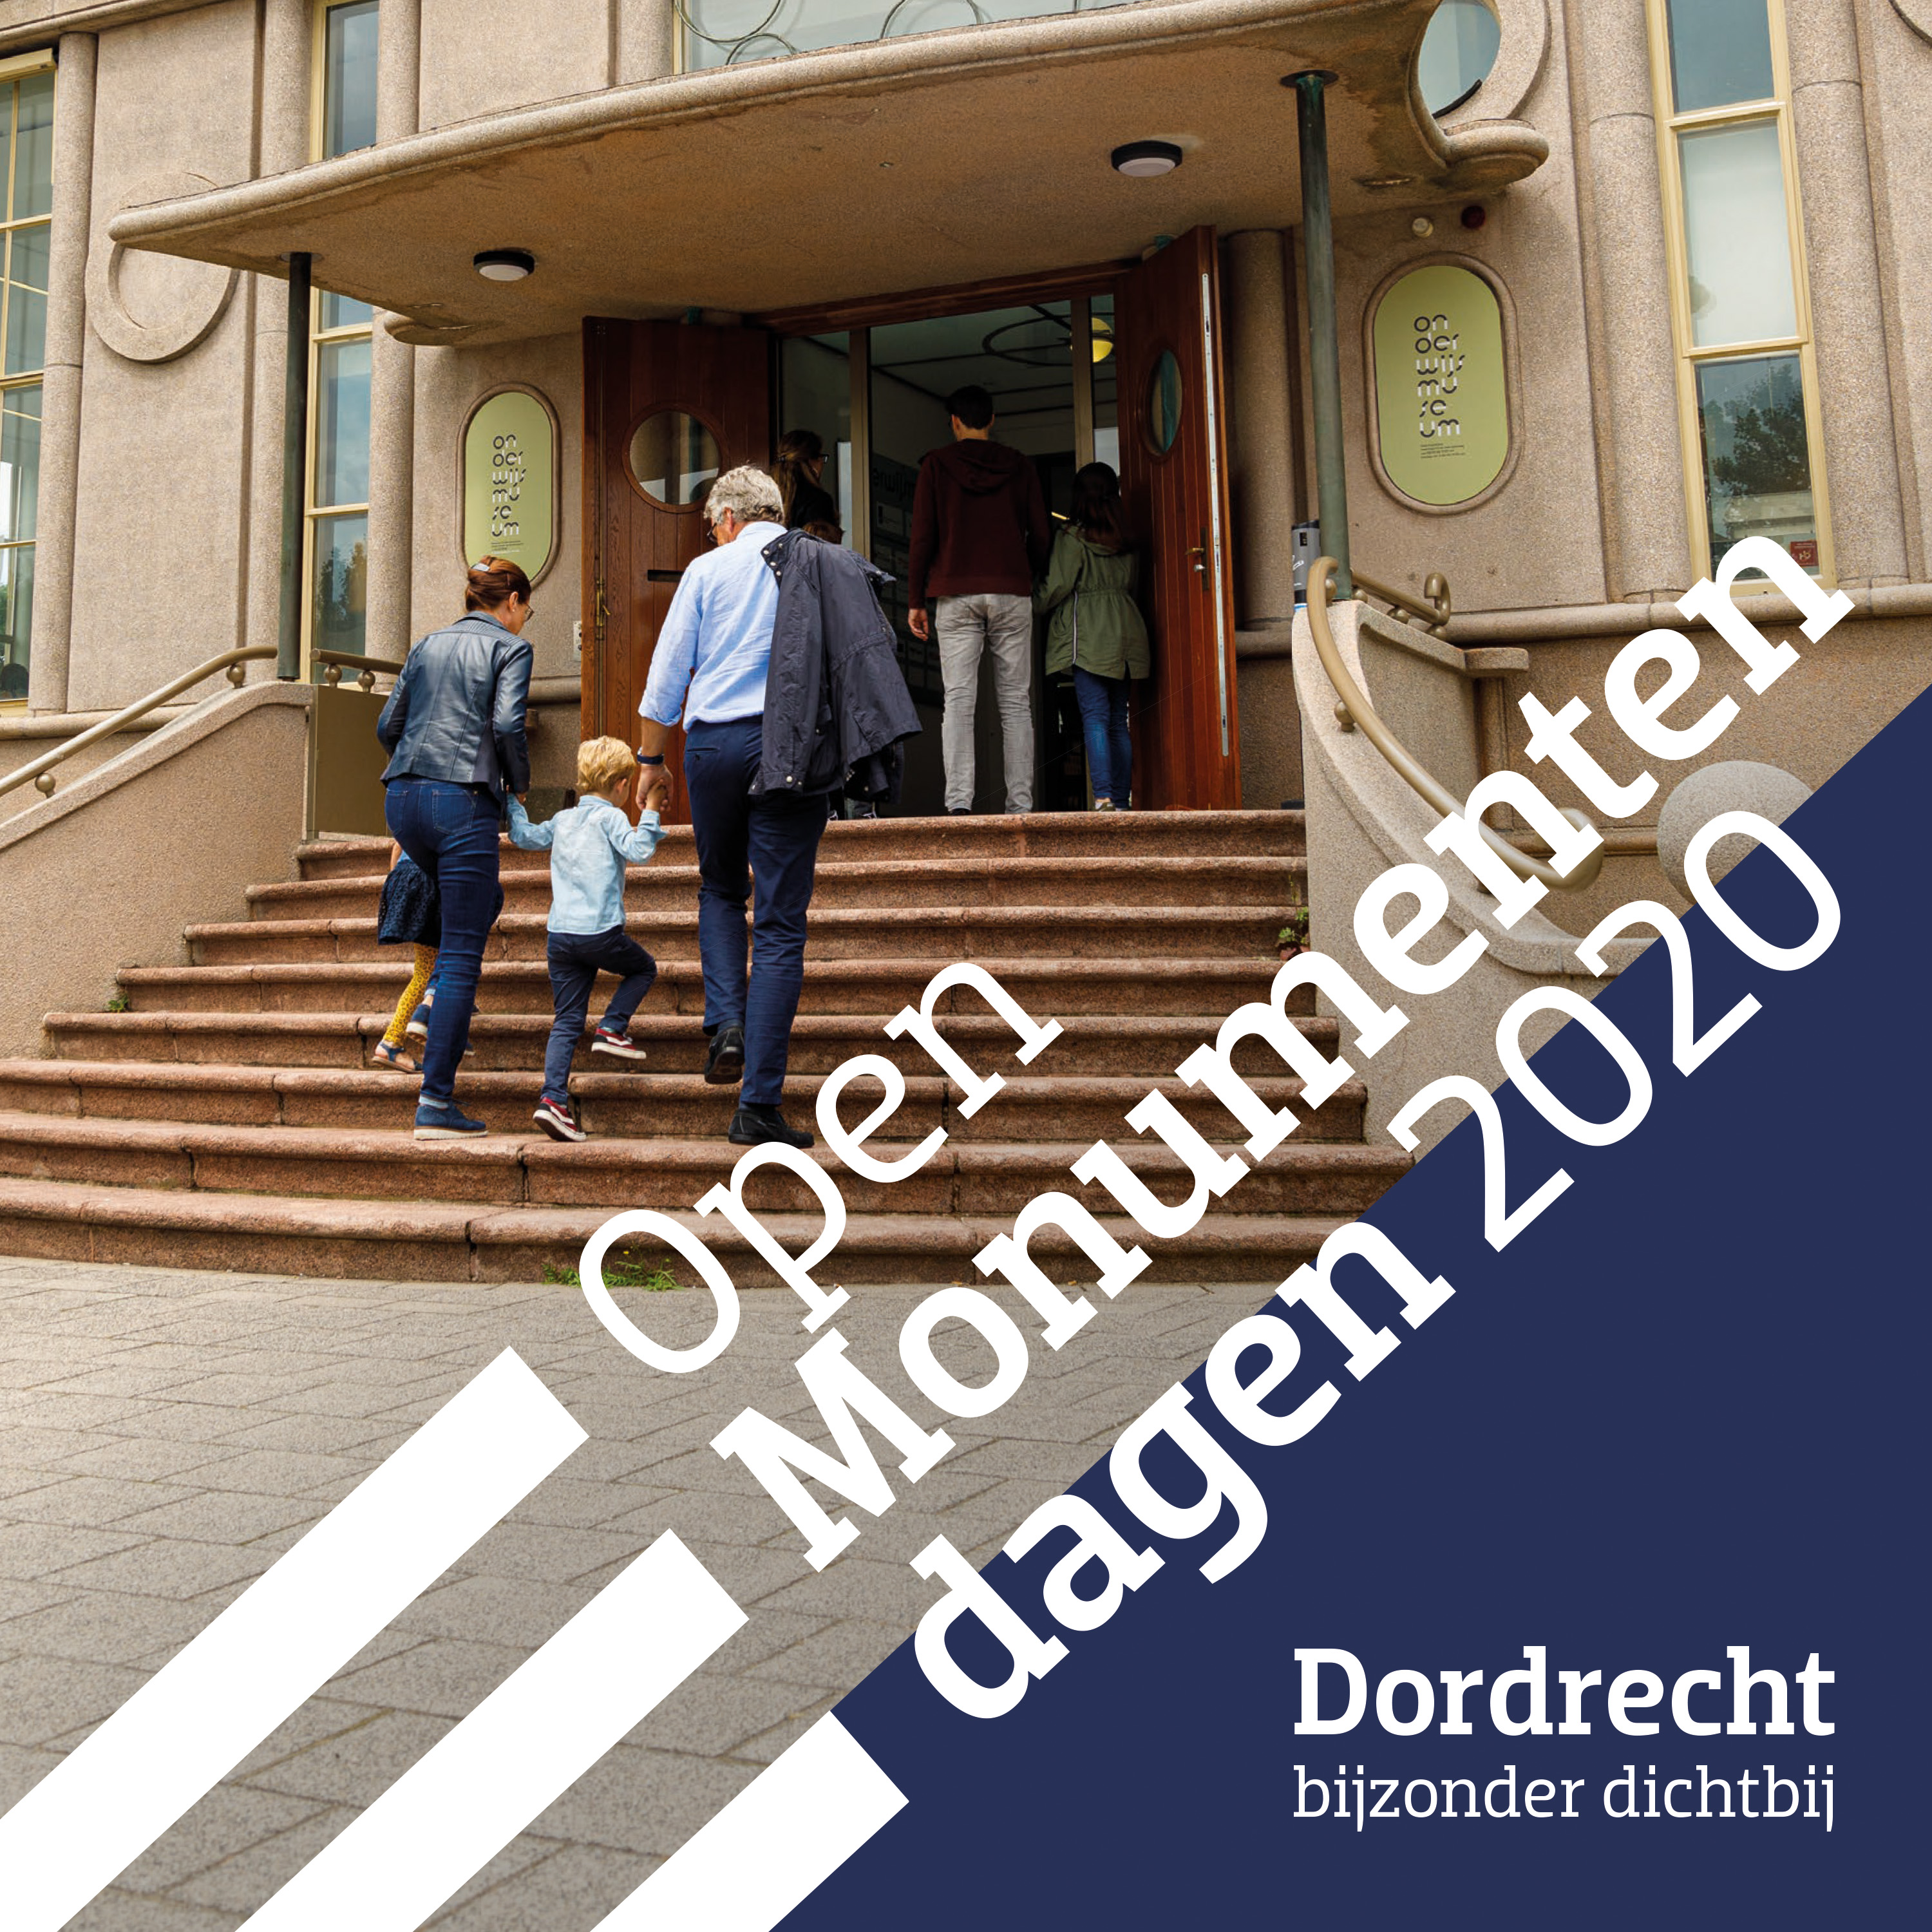 Open Monumentendagen 2020 - Thema: "Leermonument in Dordrecht"